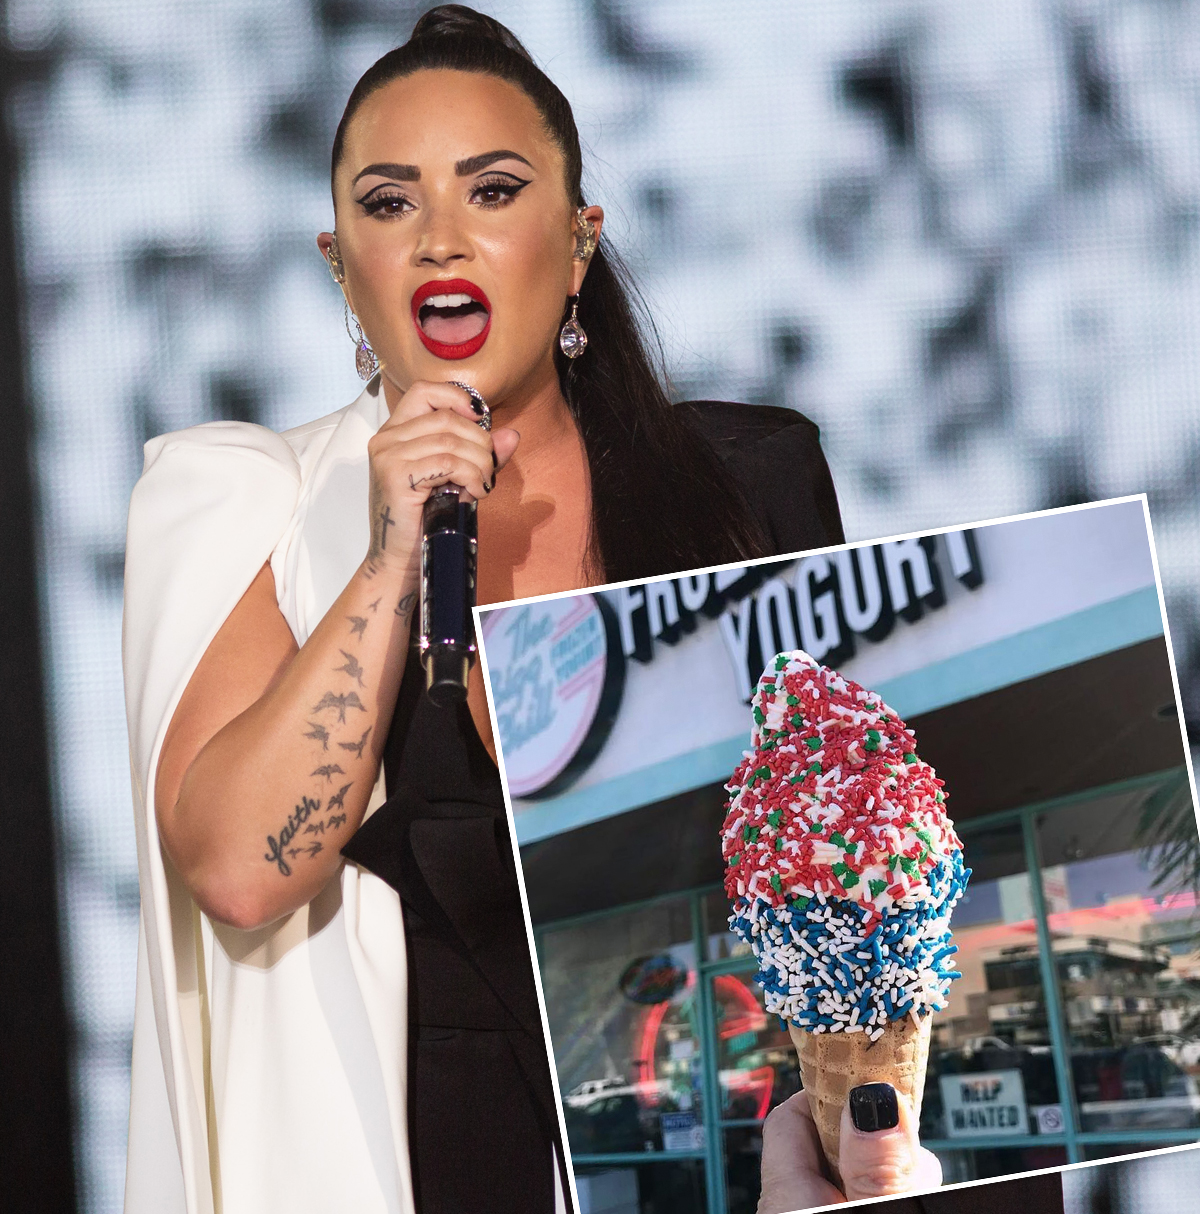 Demi Lovato Frozen Yogurt Shop Scandal